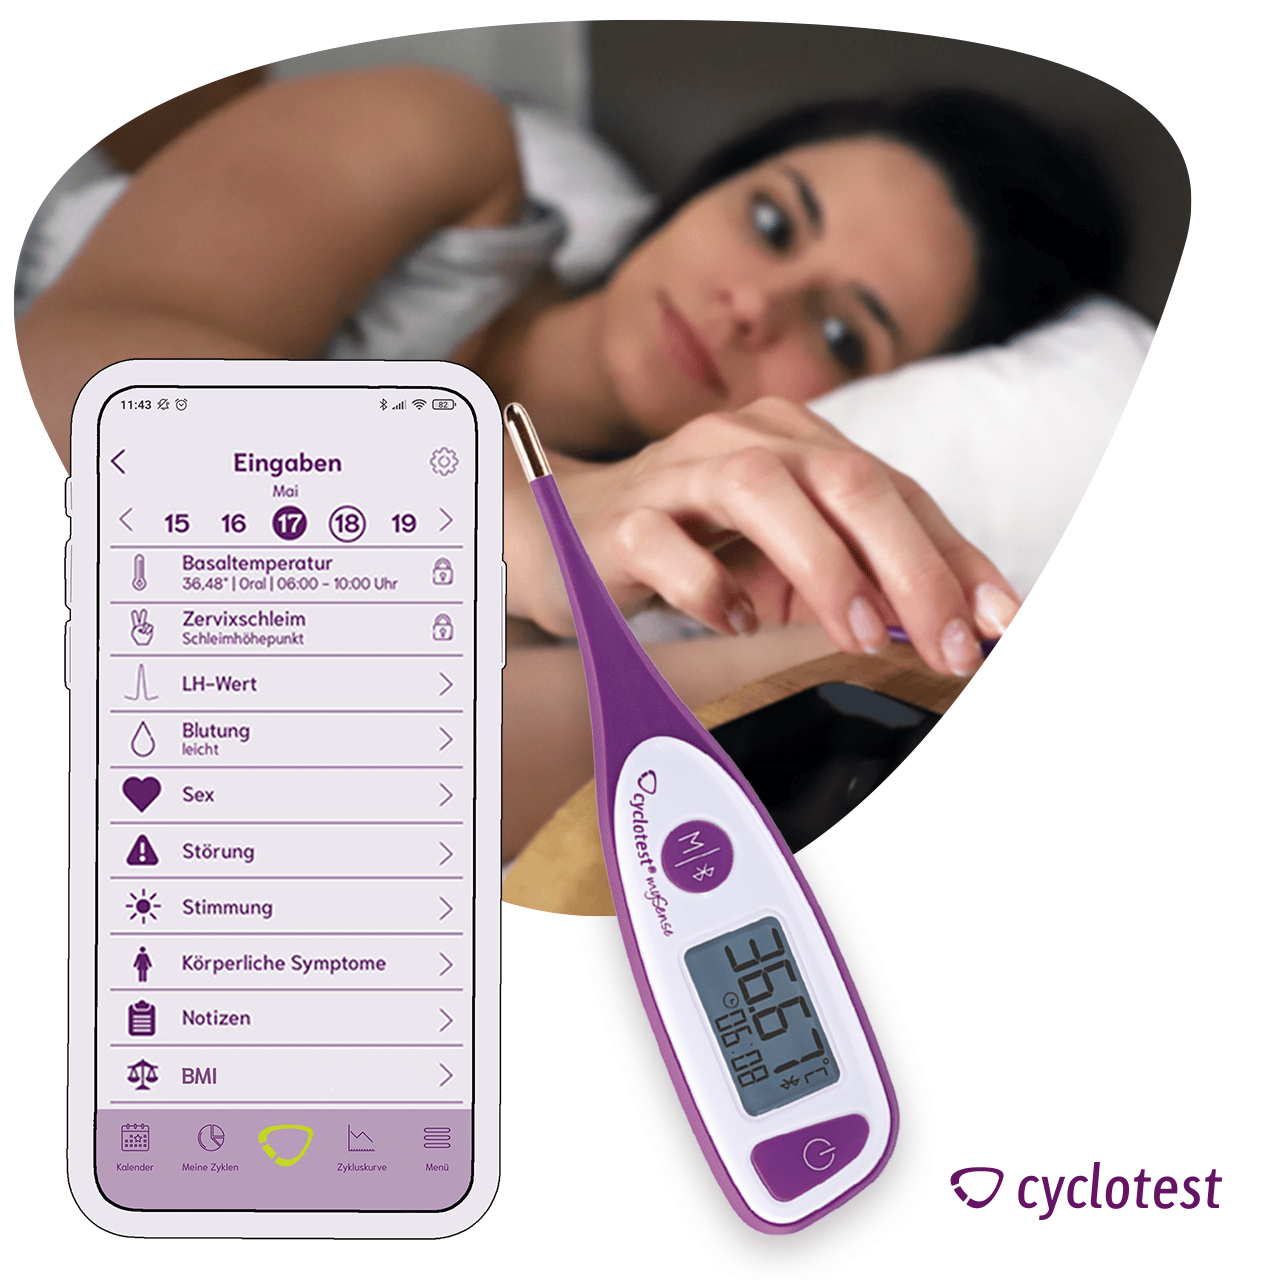 In die cyclotest mySense-App kannst Du viele Eisprung-Symptome eingeben.